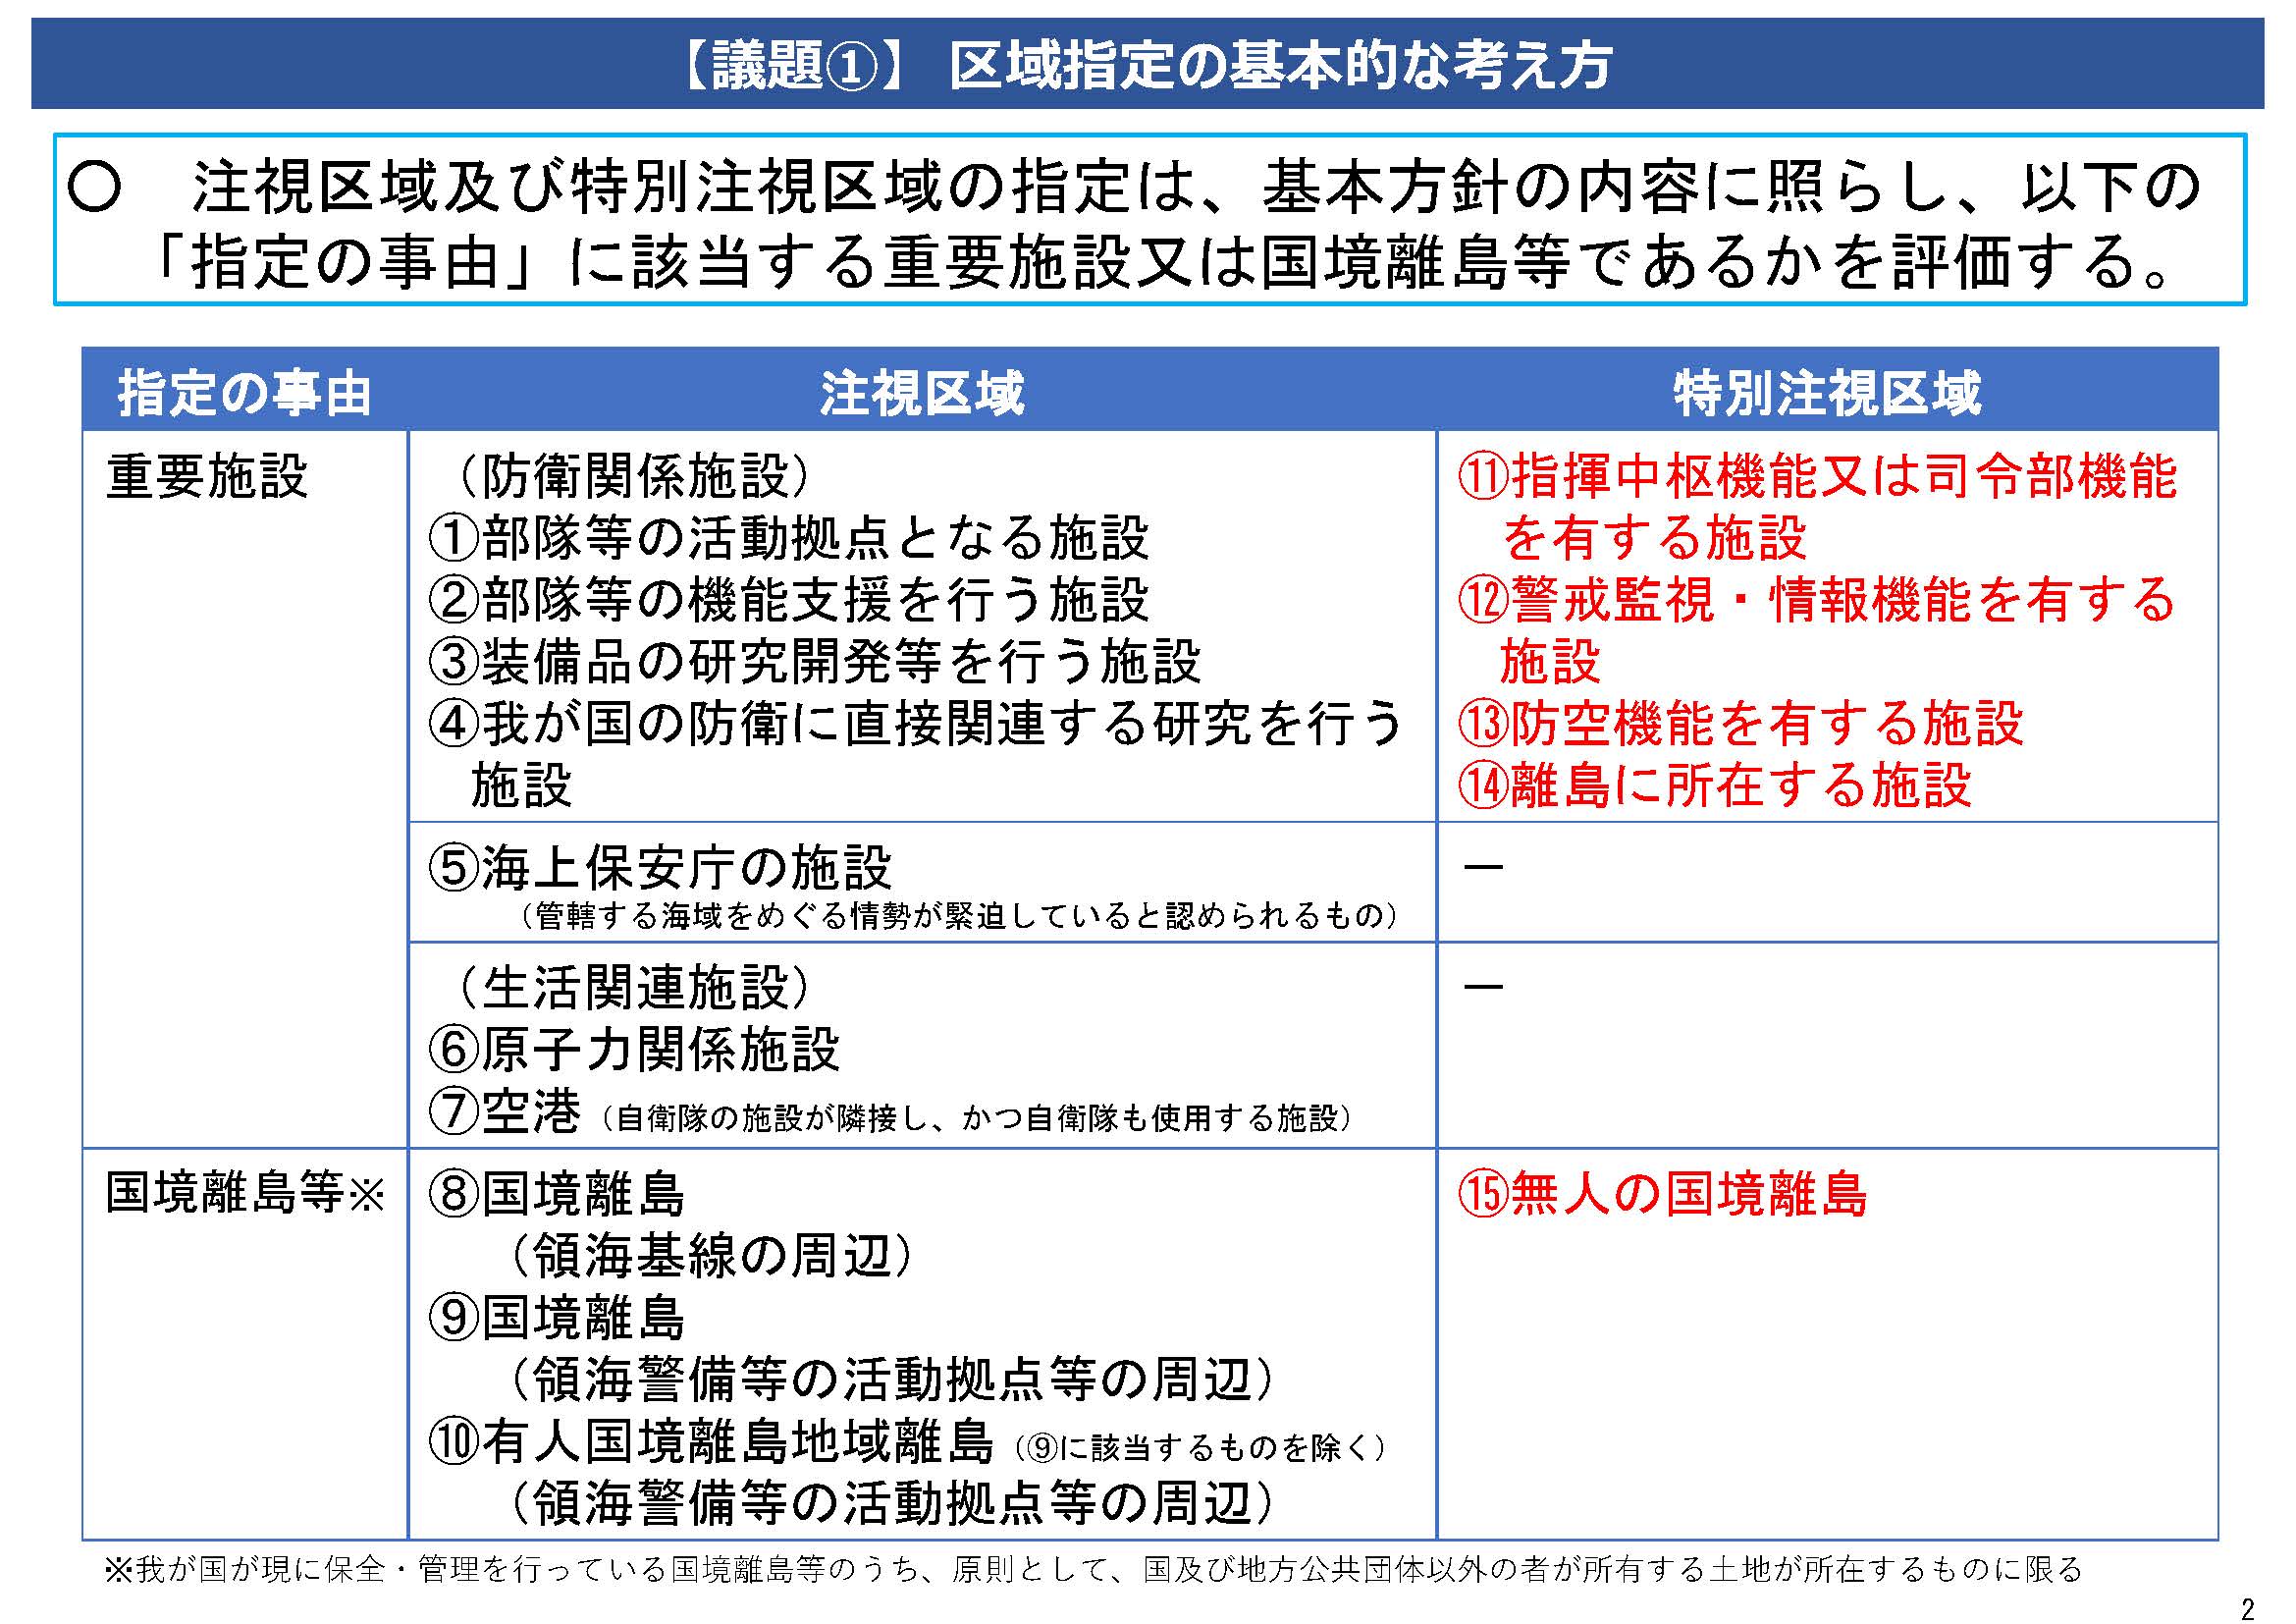 重要土地等調査法 全面施行に伴う区域指定と外国事業者への影響 - 桜田 